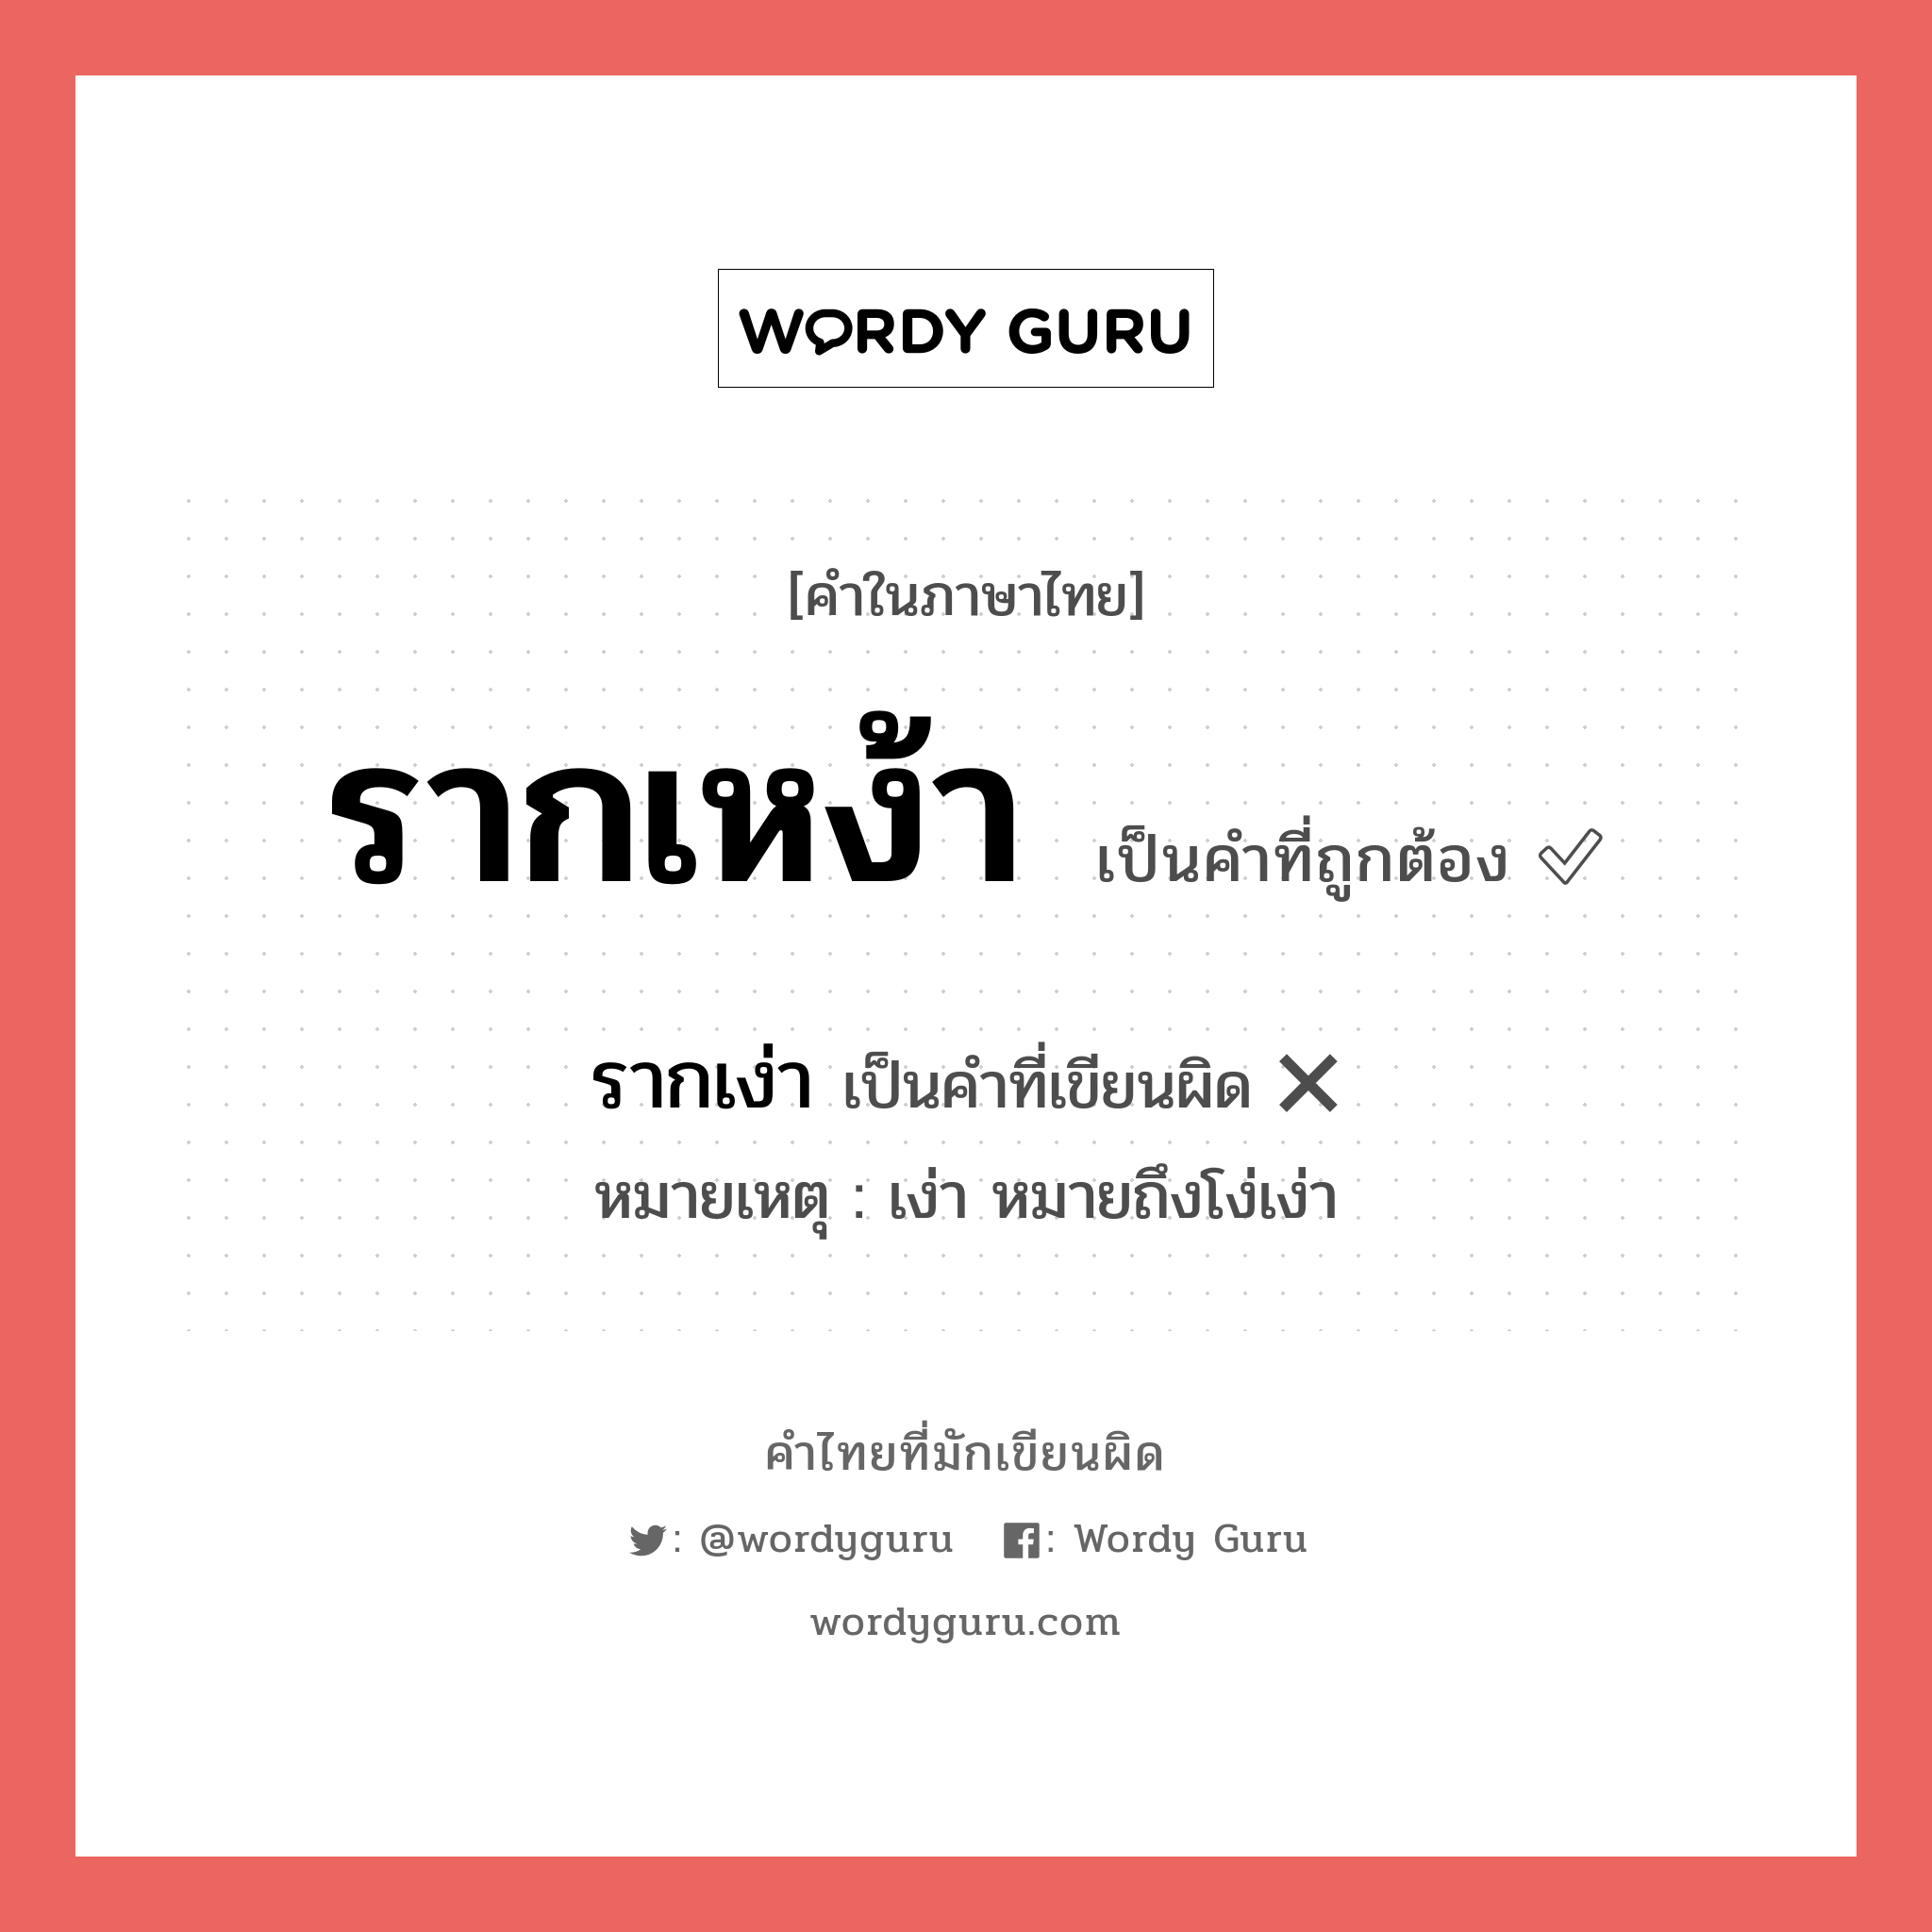 รากเหง้า หรือ รากเง่า เขียนยังไง? คำไหนเขียนถูก?, คำในภาษาไทยที่มักเขียนผิด รากเหง้า คำที่ผิด ❌ รากเง่า หมายเหตุ เง่า หมายถึงโง่เง่า